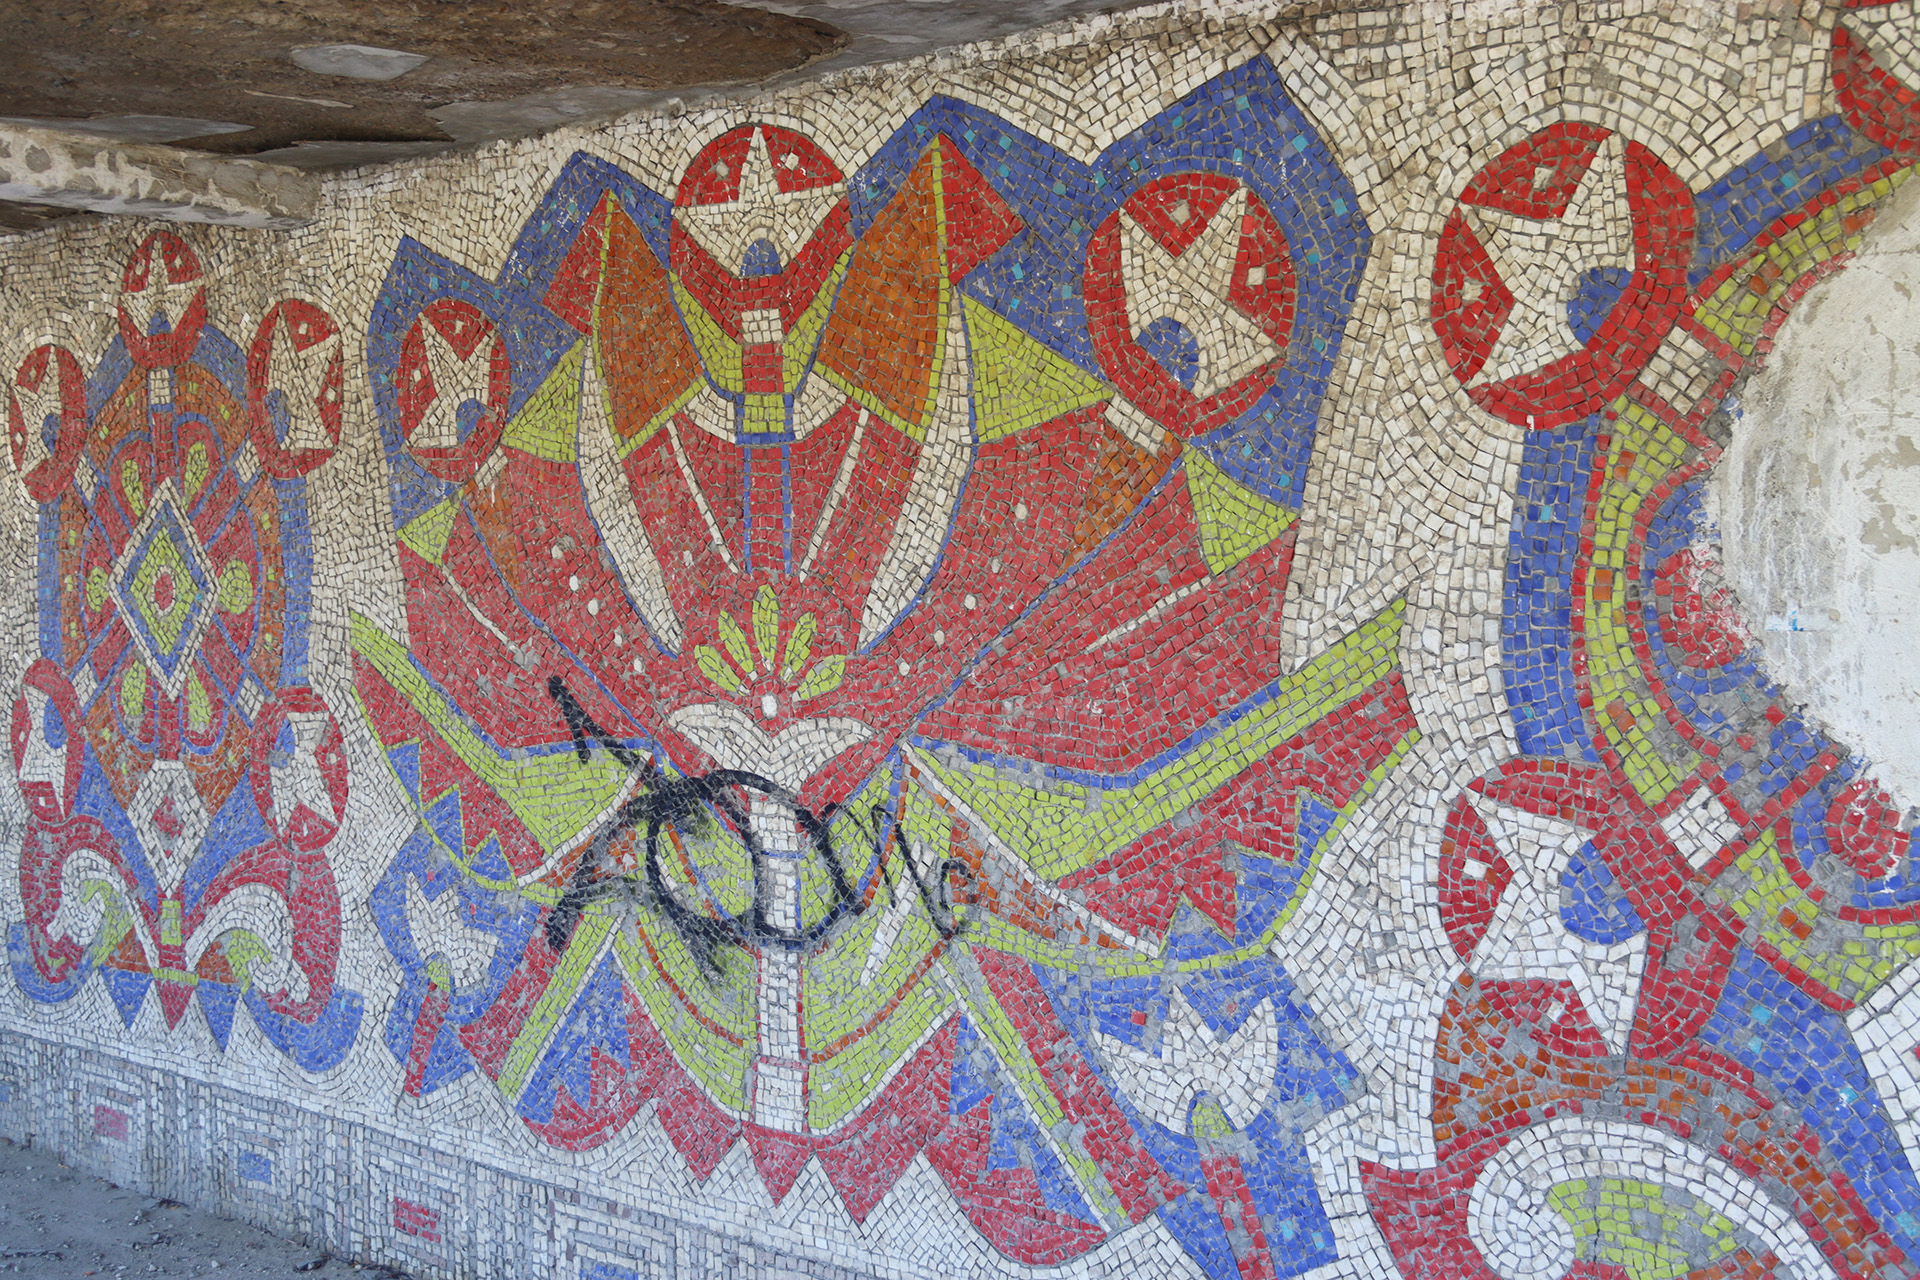 Mozaicuri realizate în perioada socialistă în stația de autobuz Sipoteni, raionul Călărași, Republica Moldova, 2023